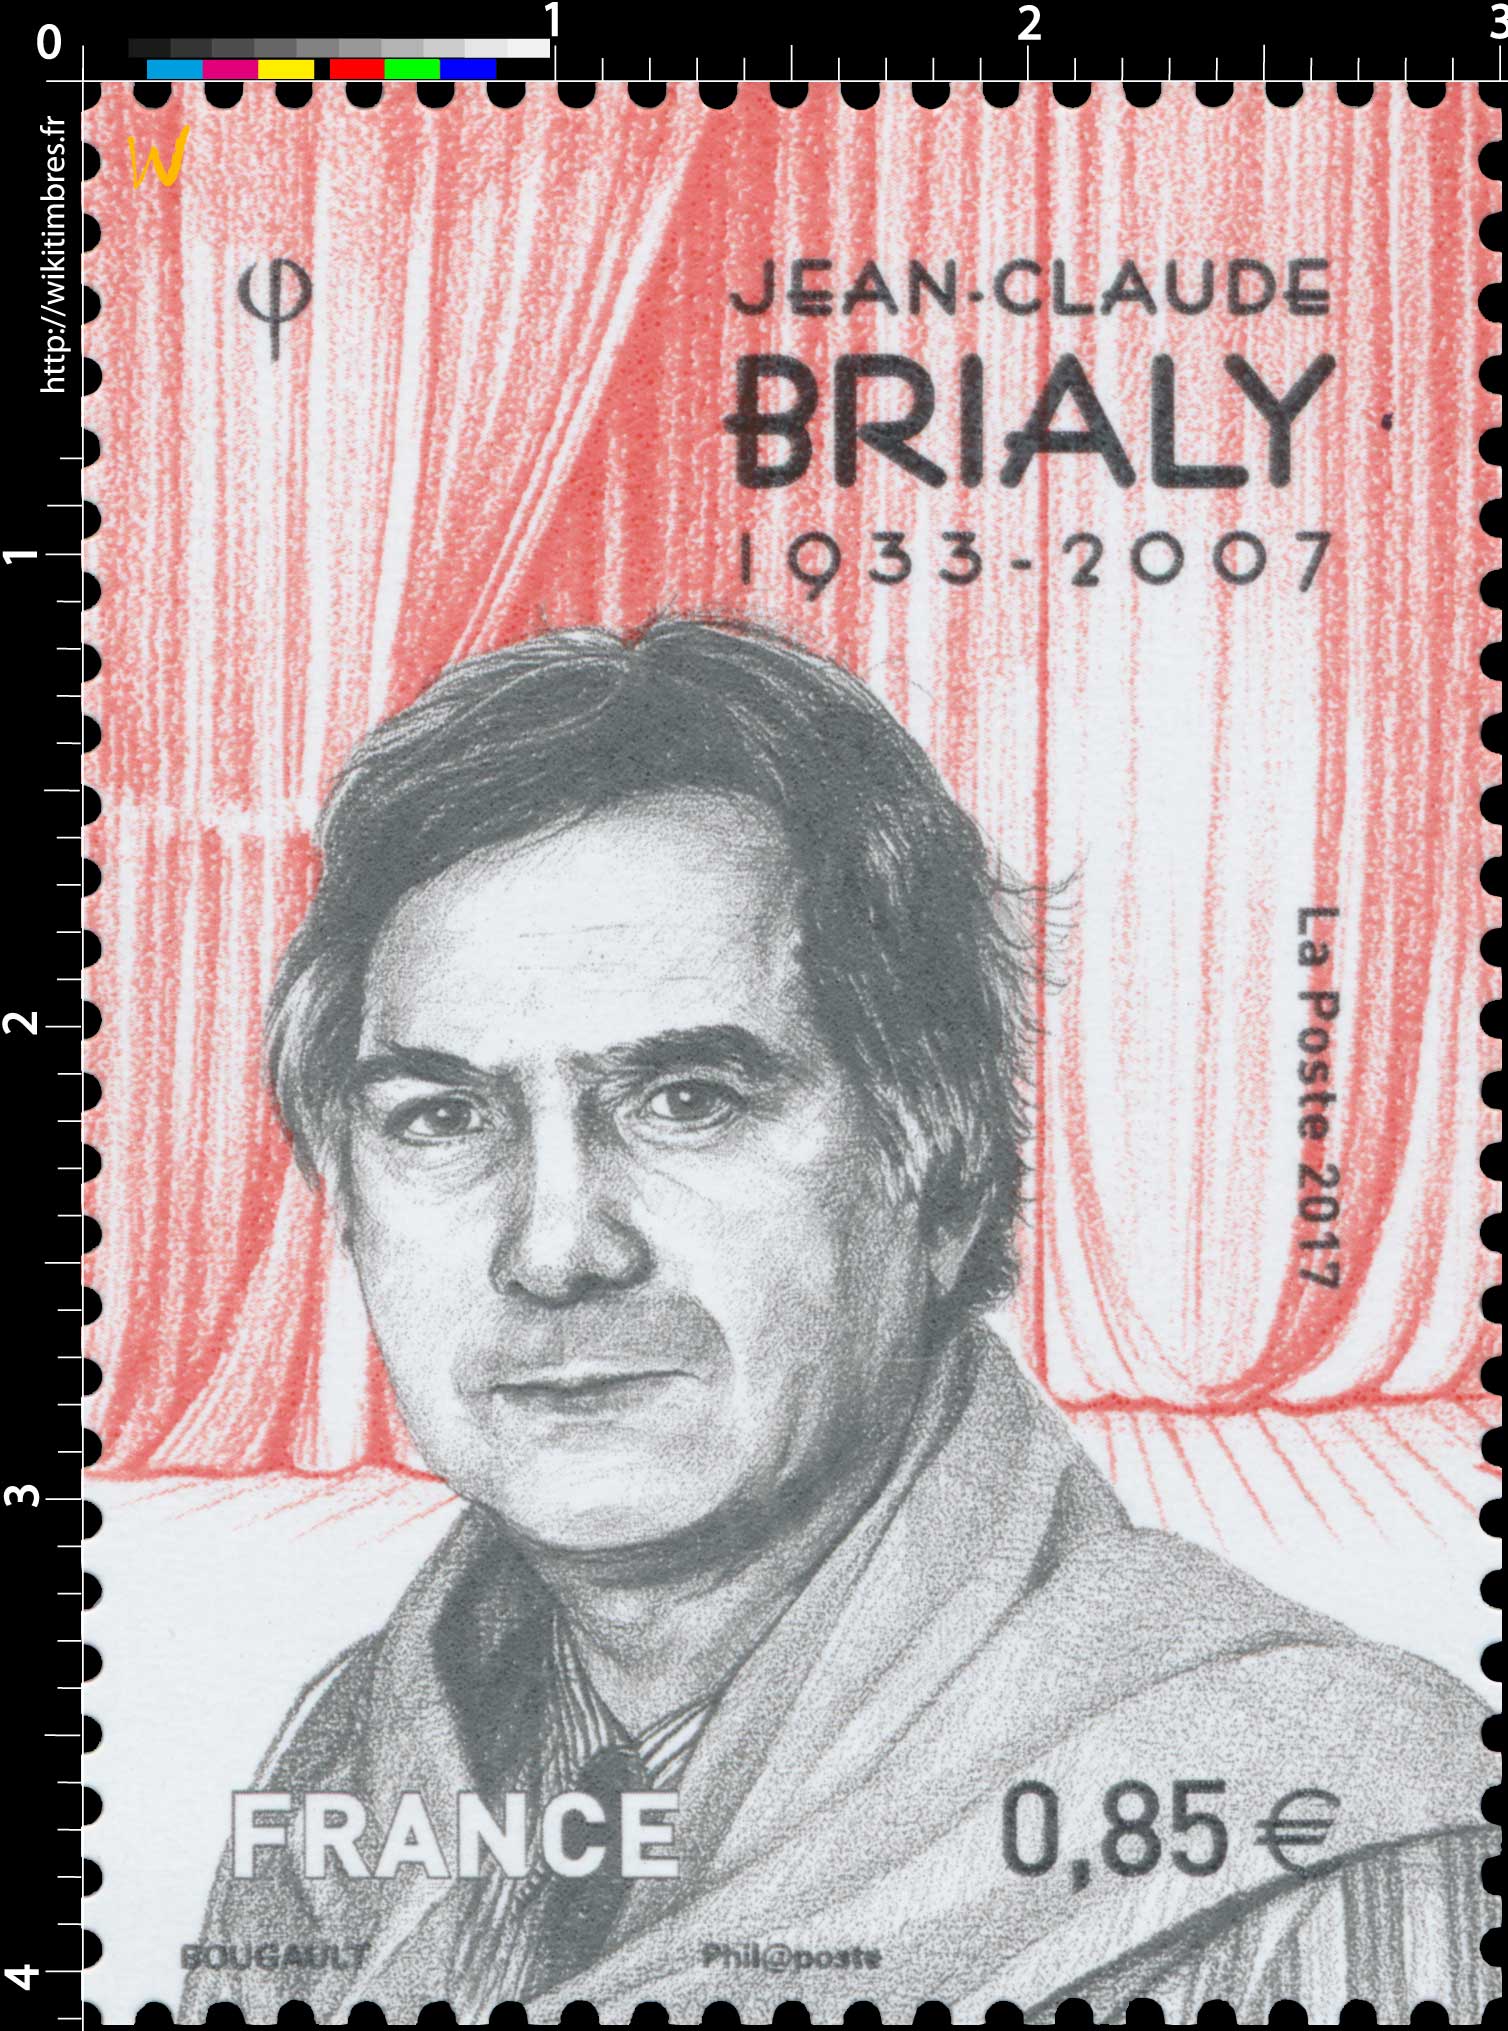 2017 Jean-Claude Brialy 1933 - 2007